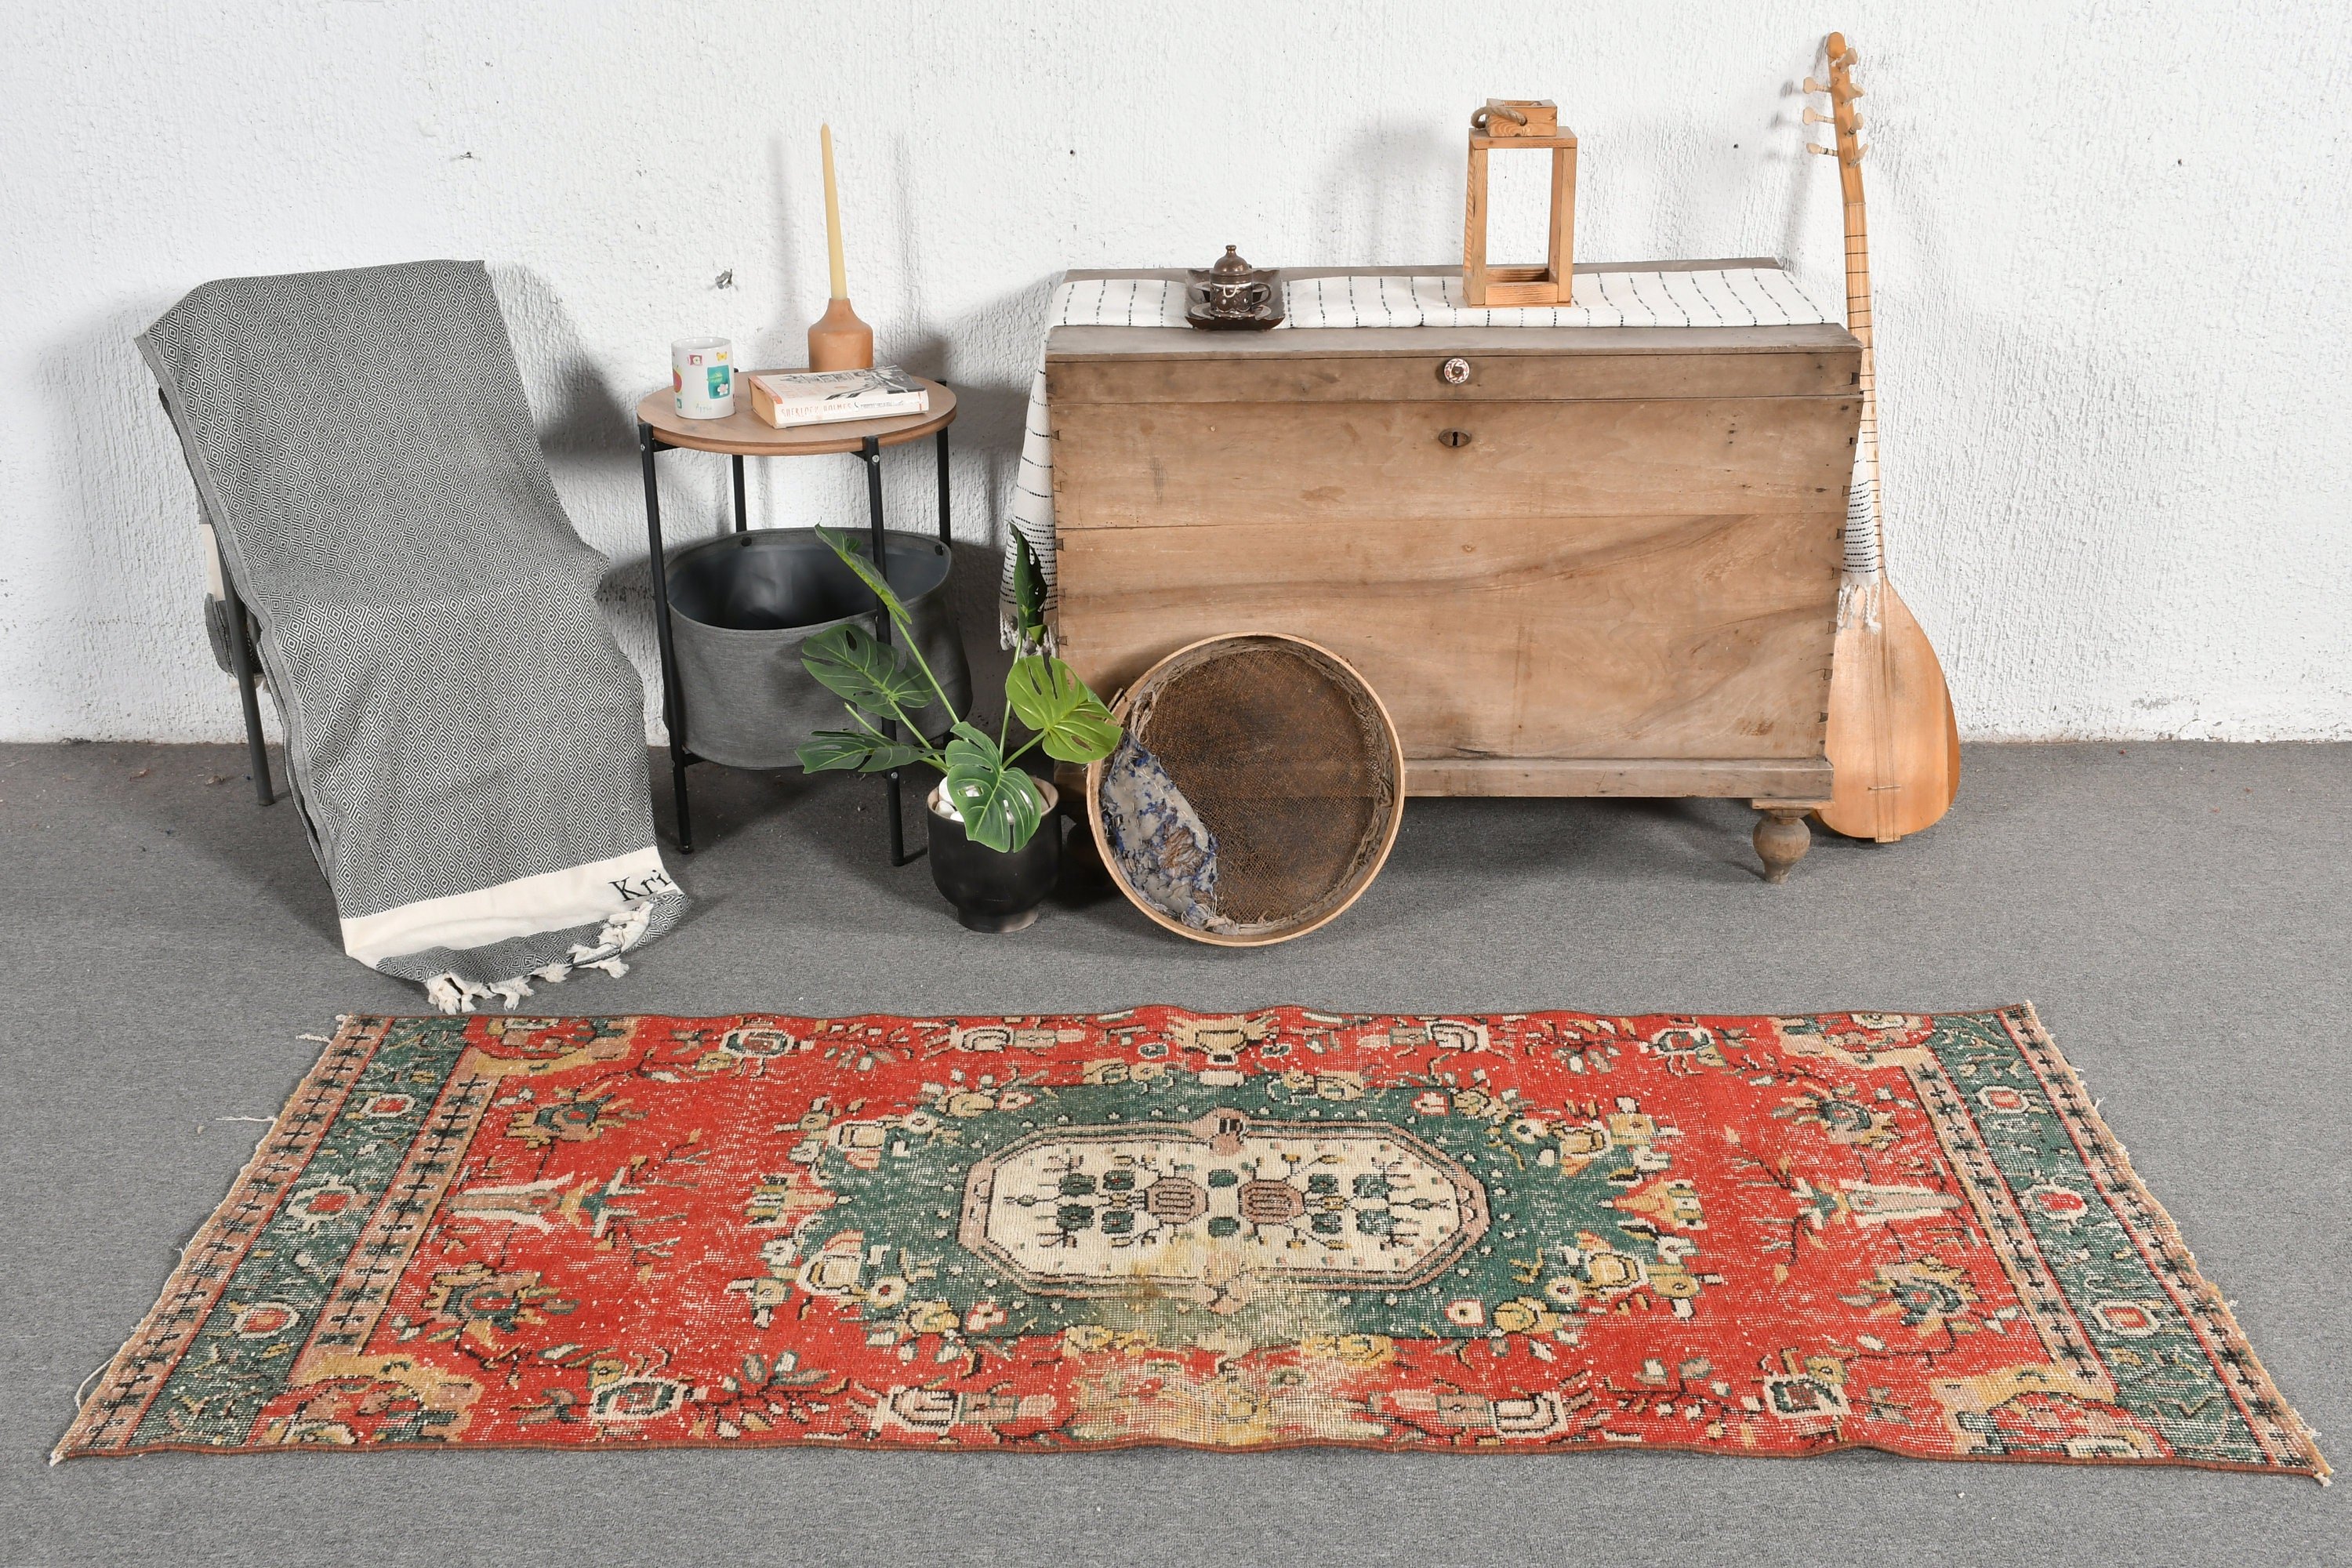 Bedroom Rug, Boho Rug, Vintage Rug, Red Floor Rug, Turkish Rug, Kitchen Rug, 2.7x6.7 ft Accent Rug, Rugs for Bedroom, Art Rug, Moroccan Rug